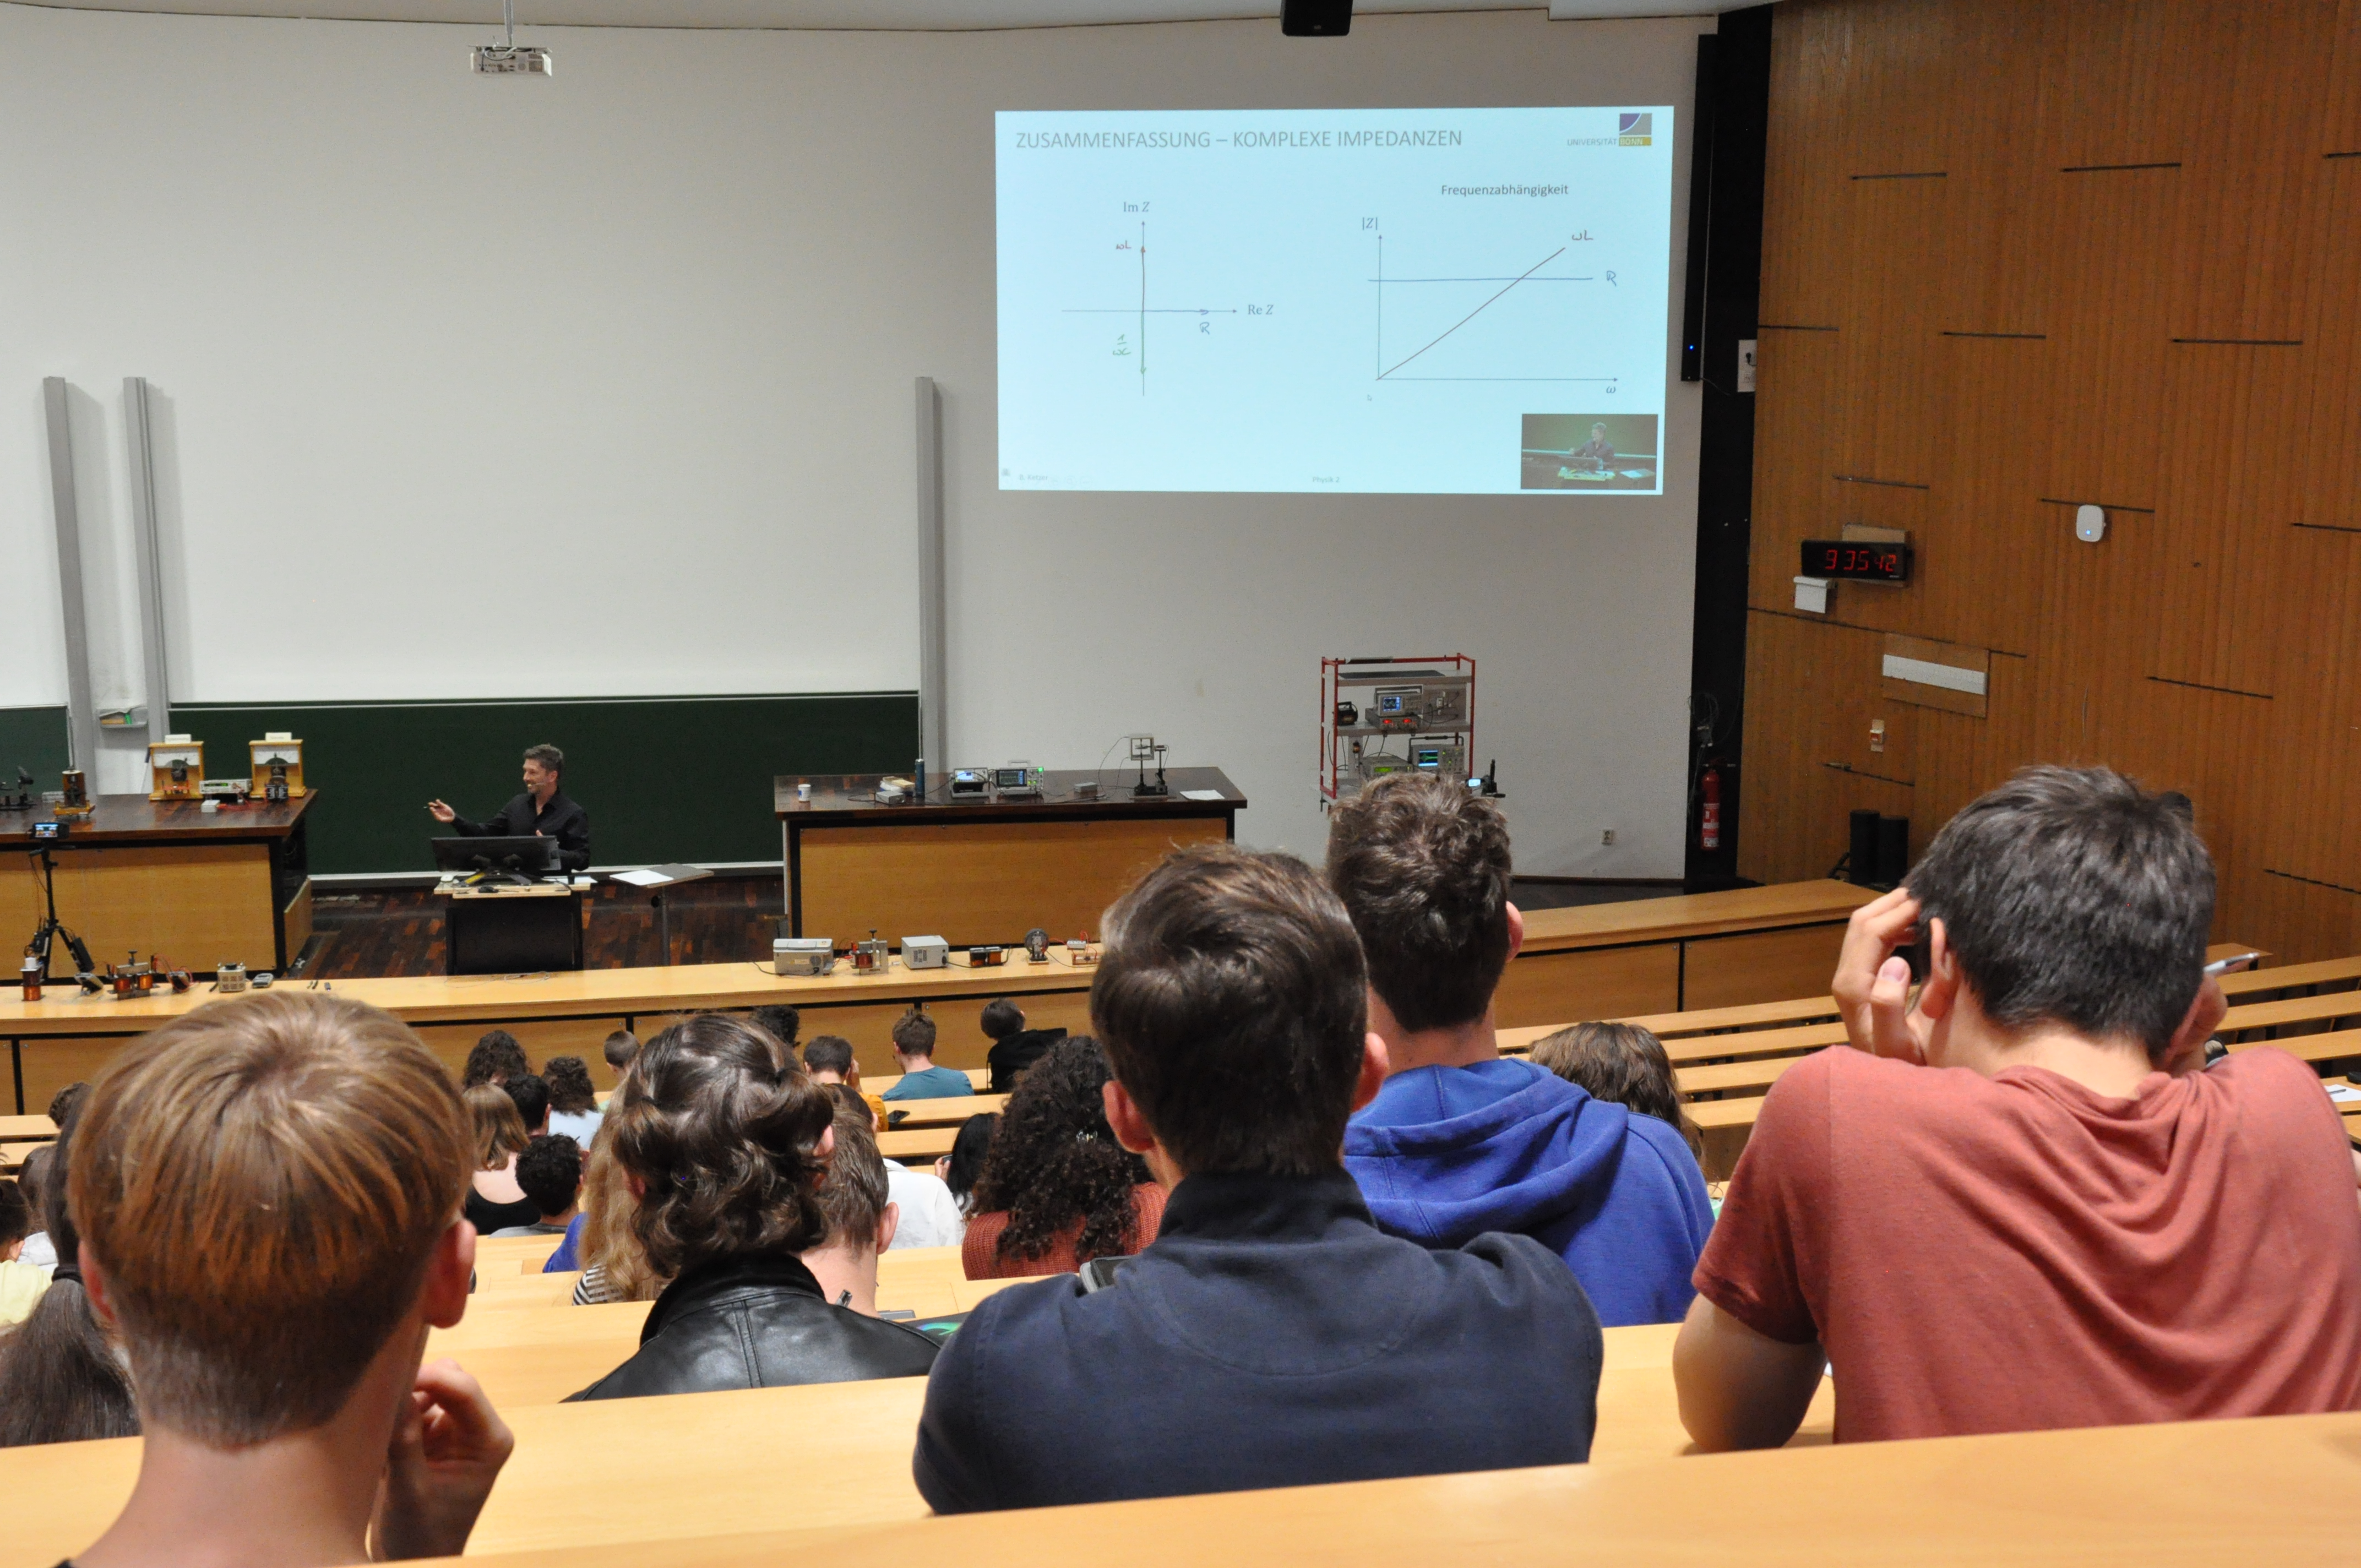 Am Freitag besuchten die Teilnehmenden die Vorlesung Experimentalphysik 2, gehalten von Professor Bernhard Ketzer